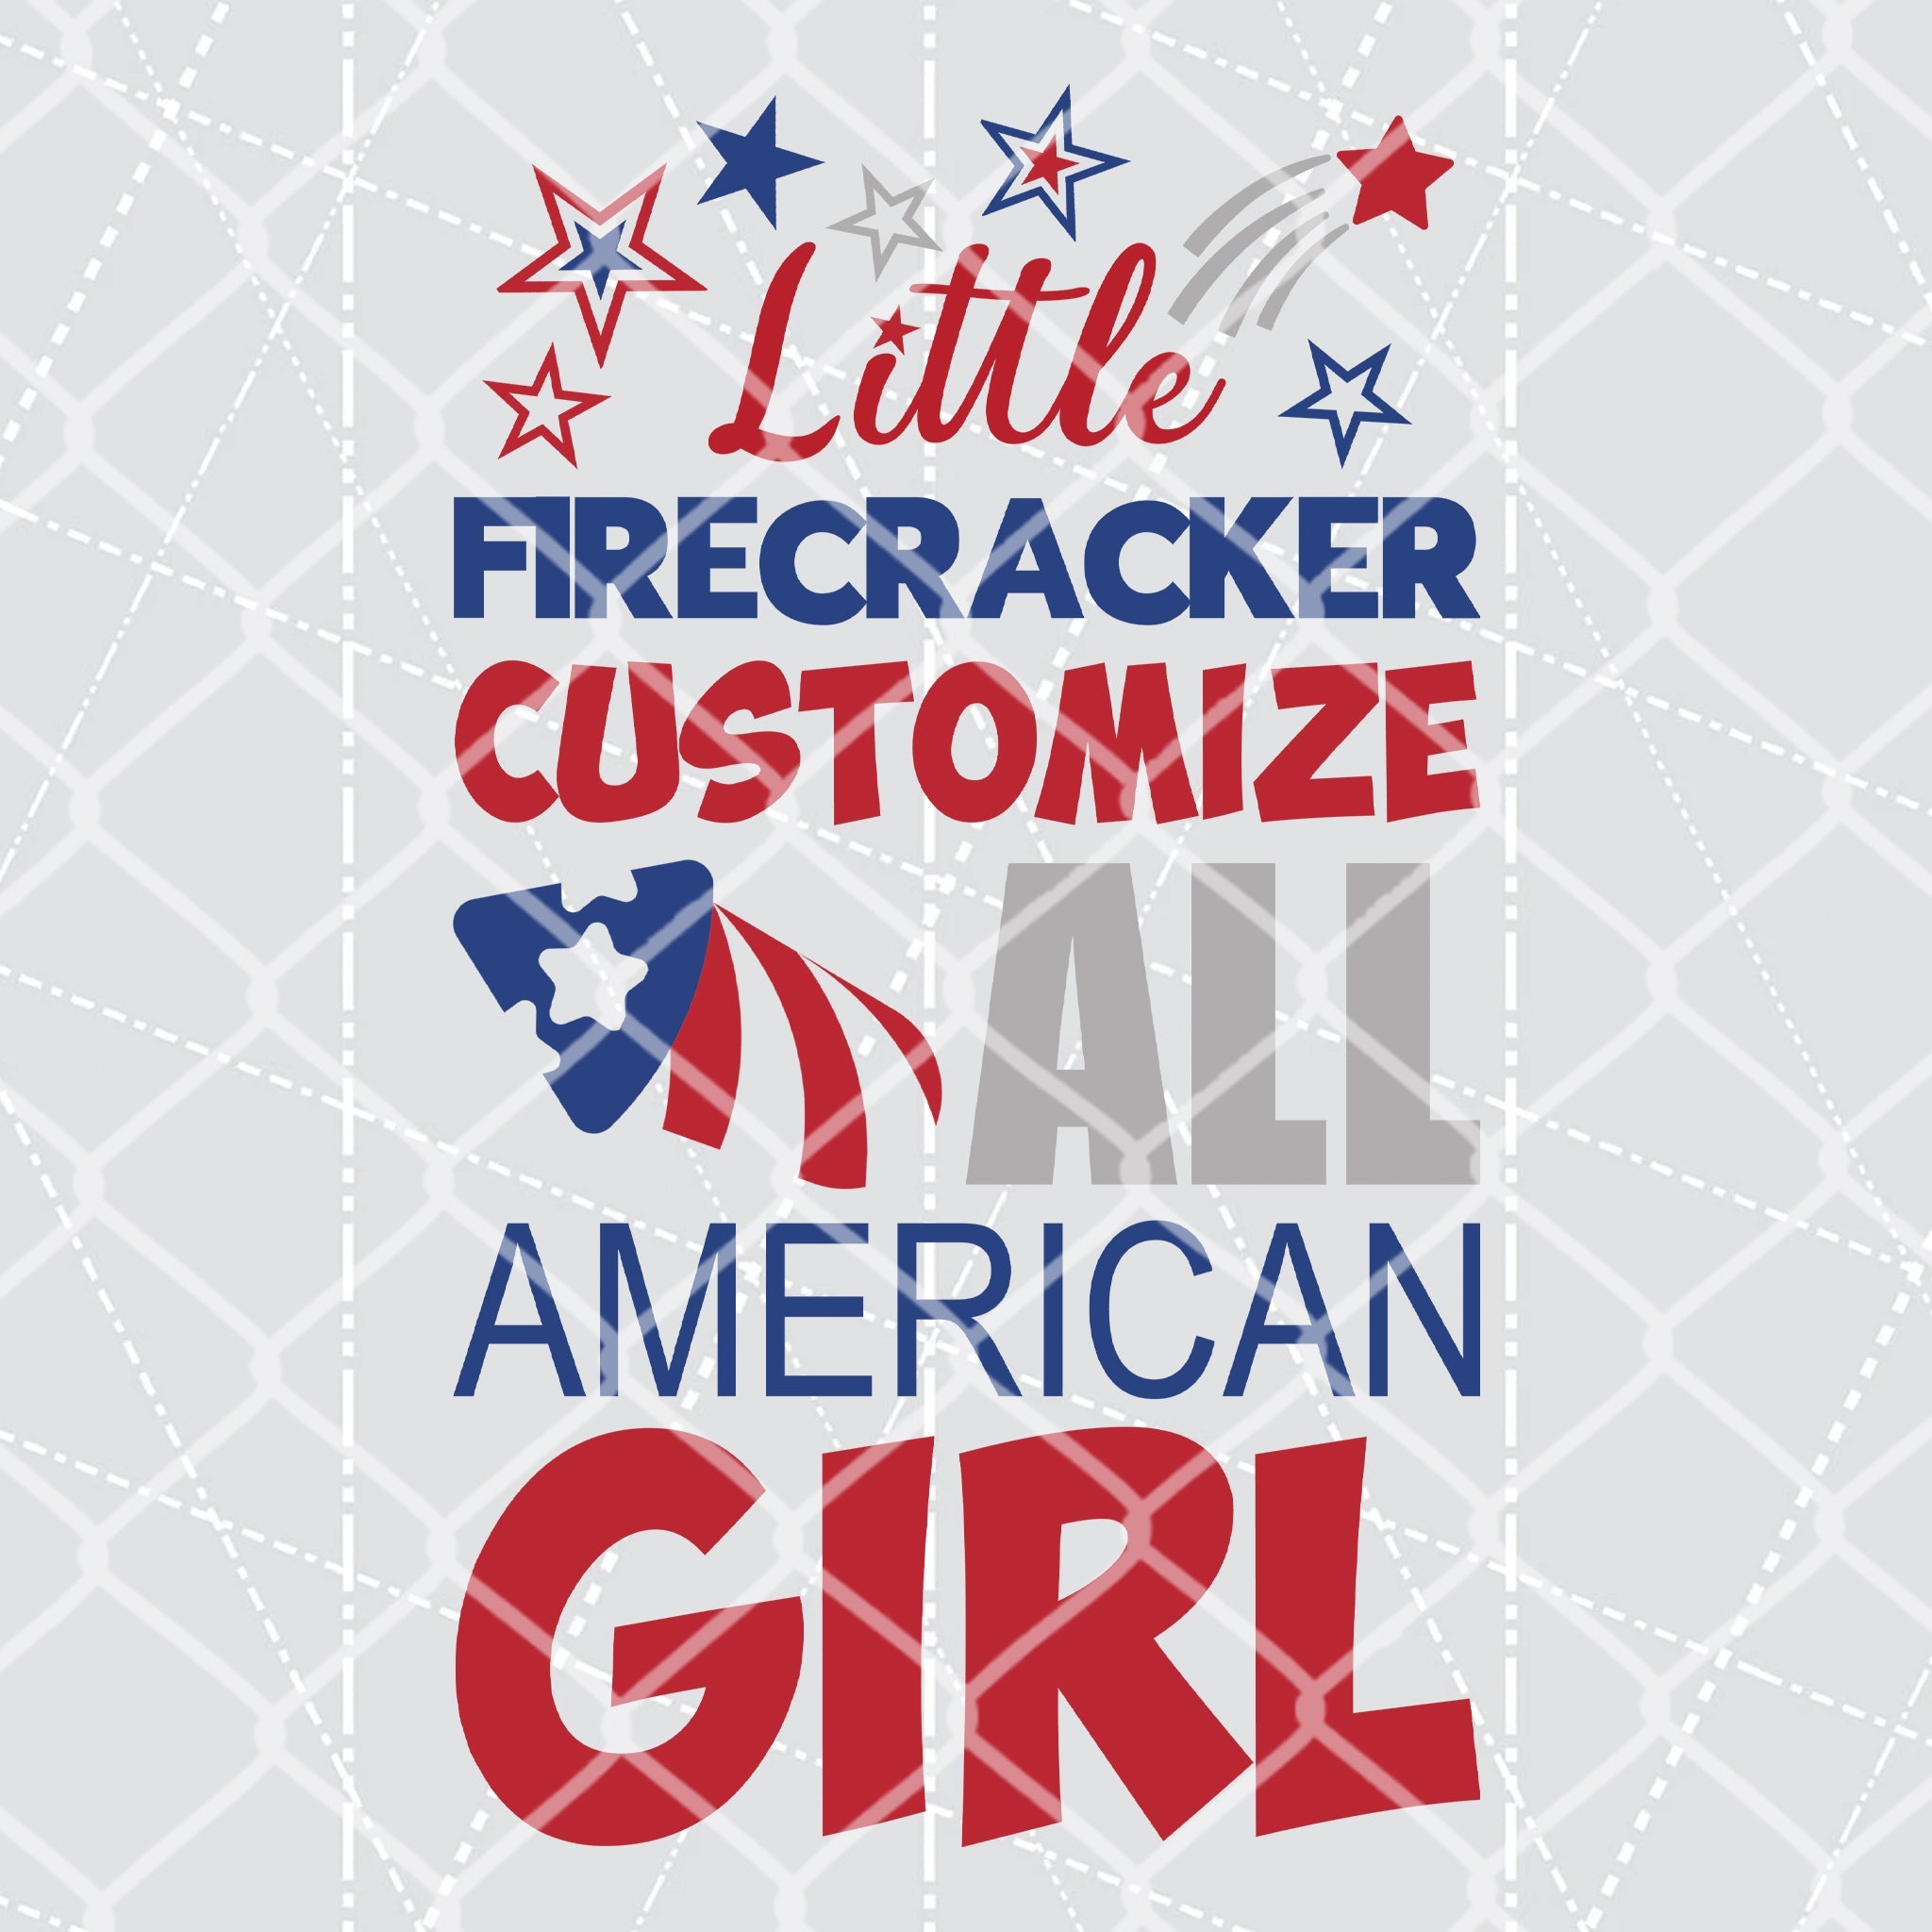 Little Firecracker All American Boy and Girl - Customize